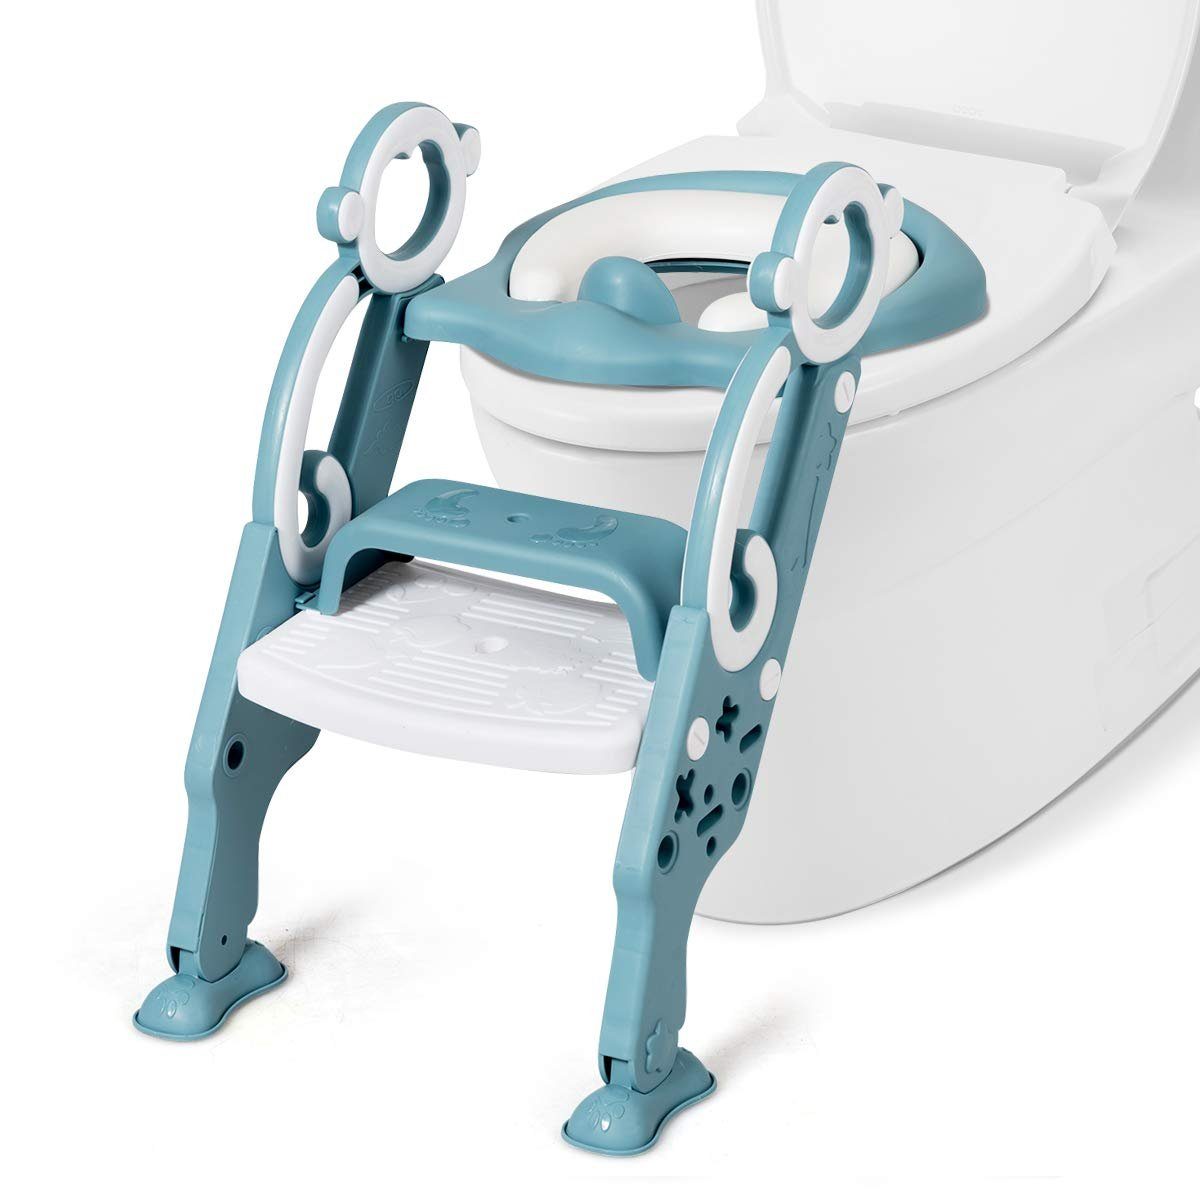 Demarkt Kinder Töpfchen Stuhl Toiletten Training Sitz Smart Abnehmbares Töpfchen für Baby Jungen und Mädchen 